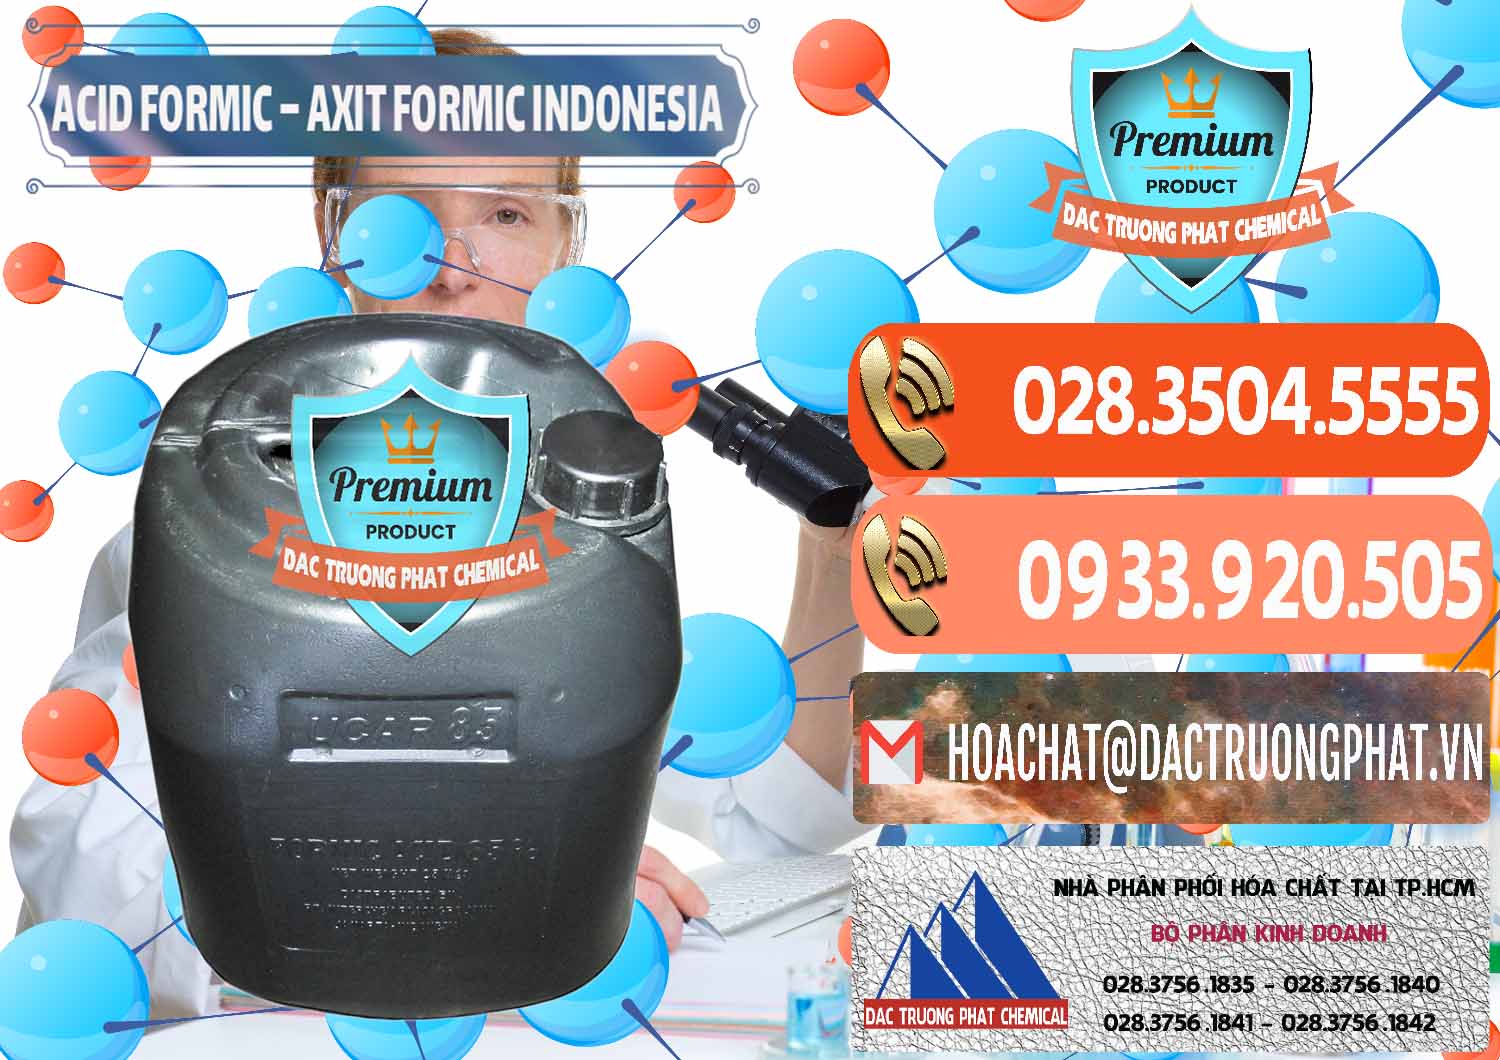 Đơn vị chuyên cung cấp & bán Acid Formic - Axit Formic Indonesia - 0026 - Đơn vị chuyên phân phối & bán hóa chất tại TP.HCM - hoachatmientay.com